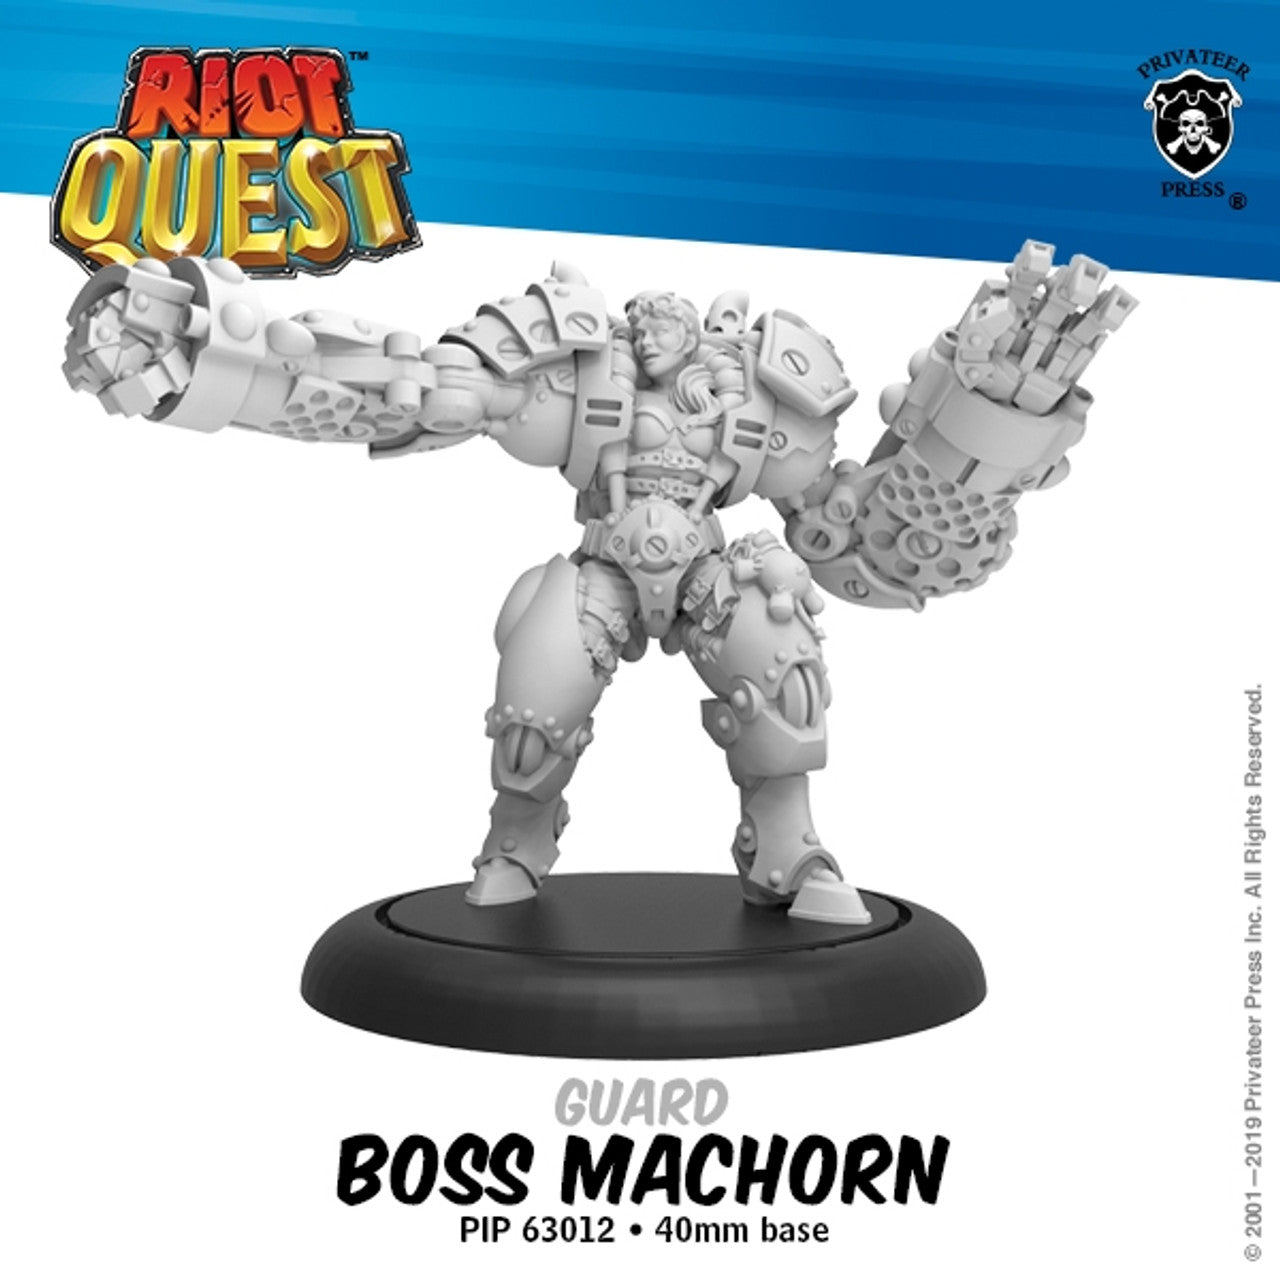 Boss MacHorn – Riot Quest Guard